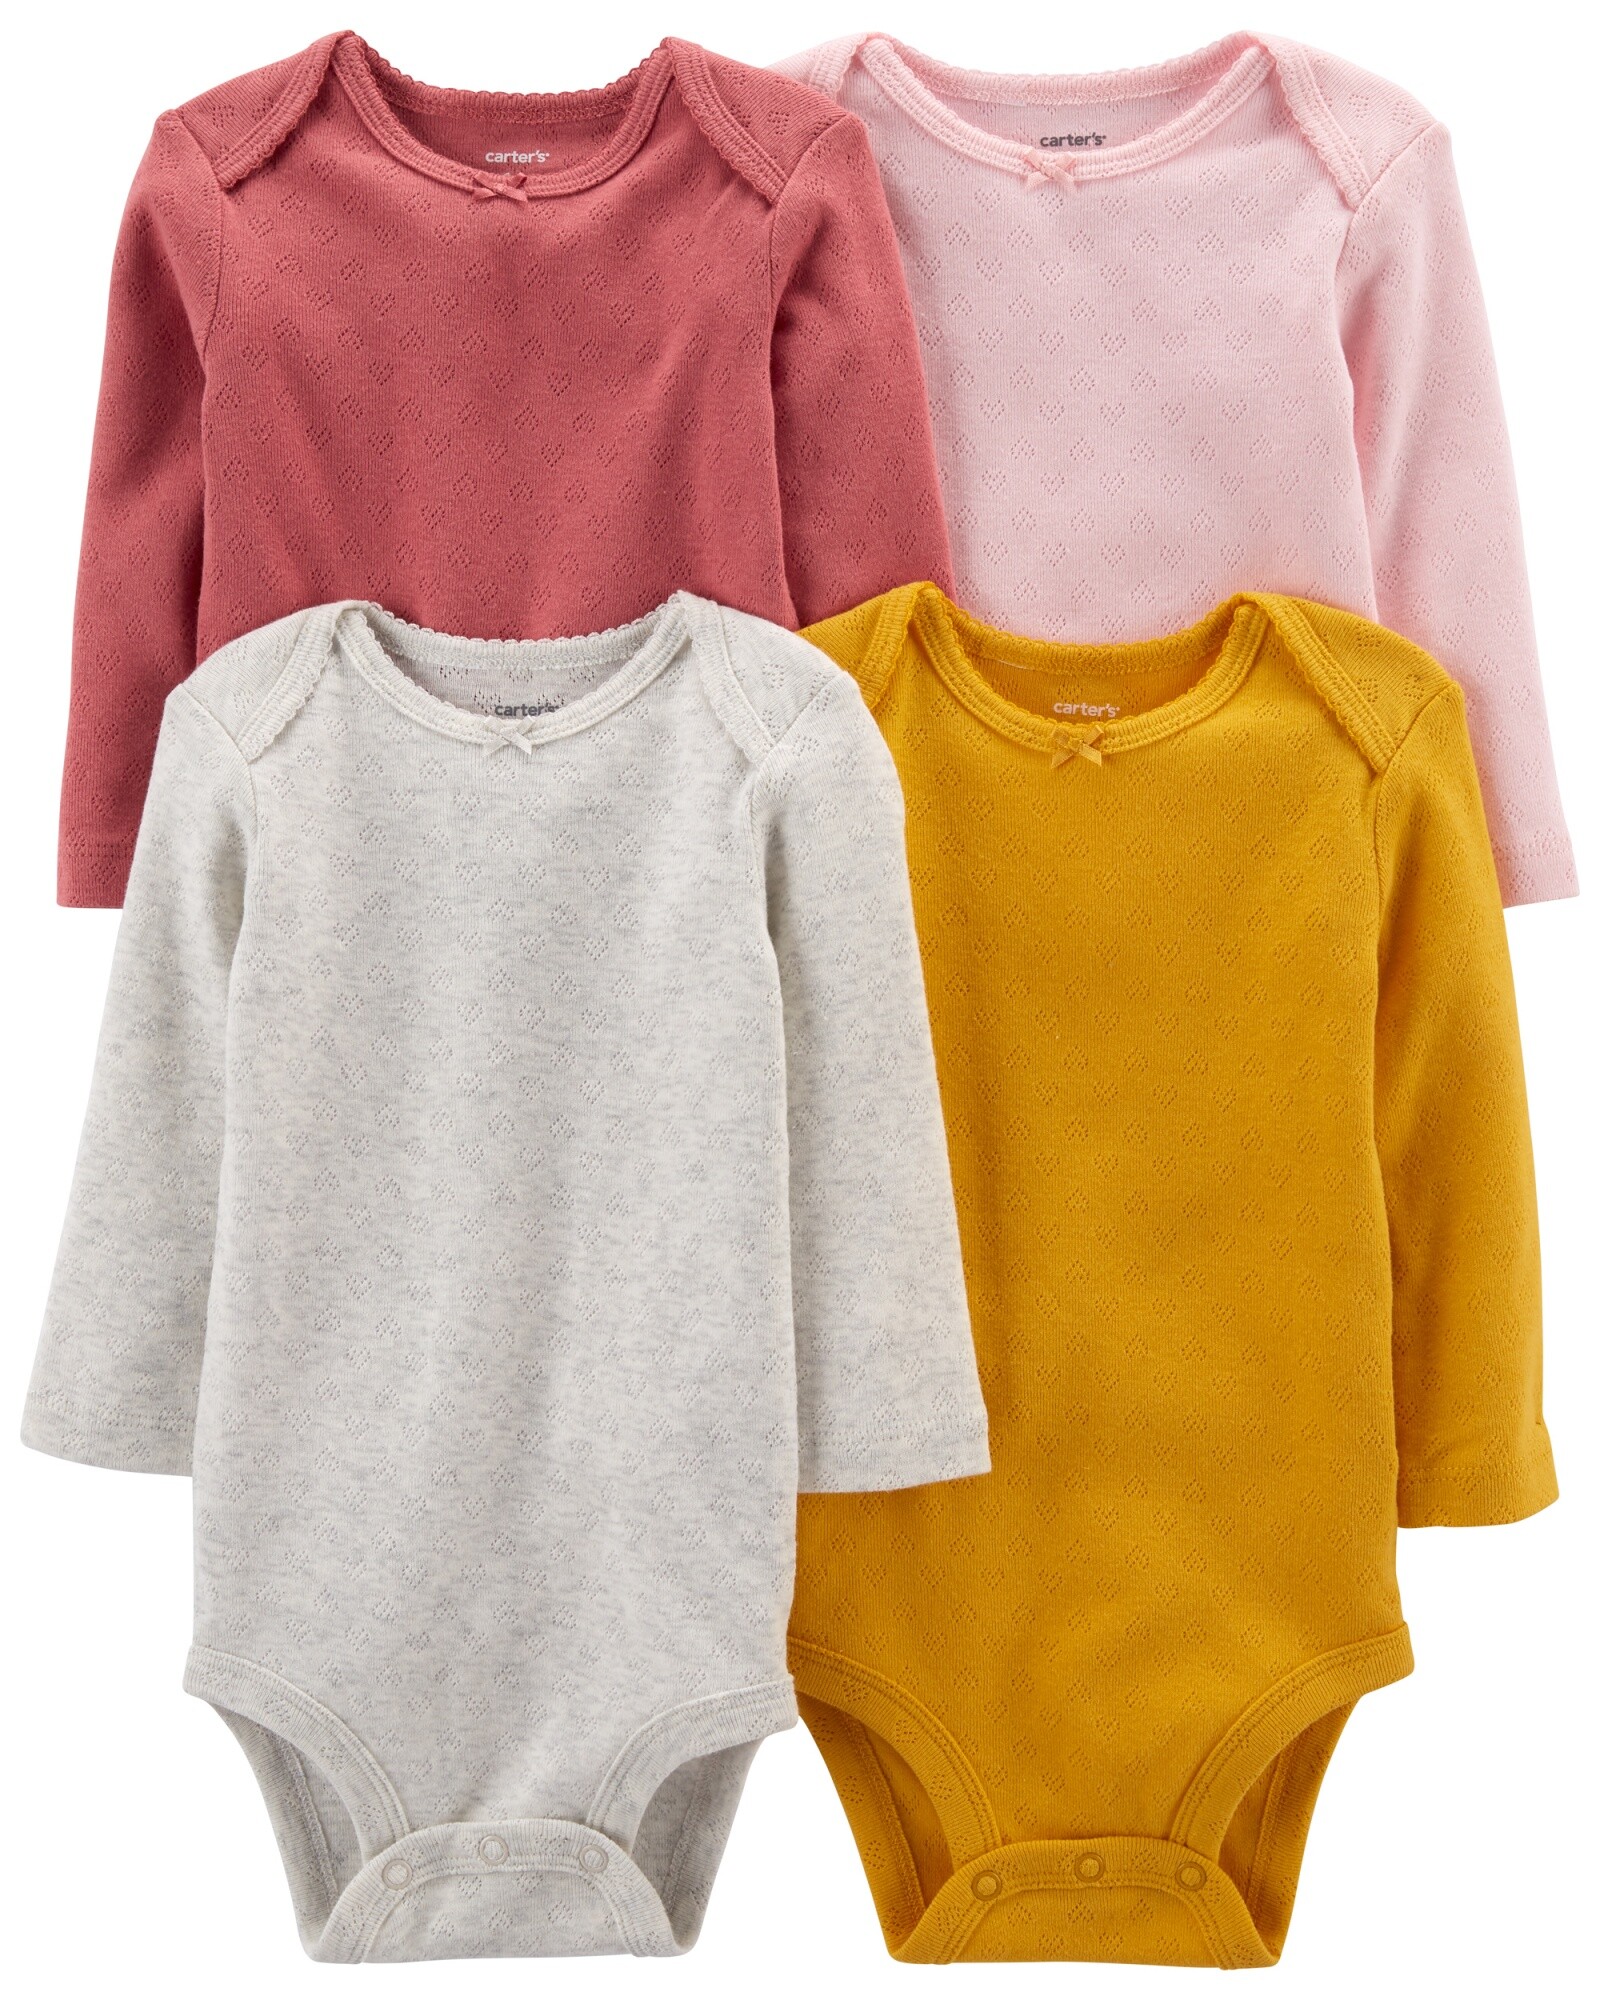 Pack cuatro bodies de algodón manga larga diferentes diseños Sin color